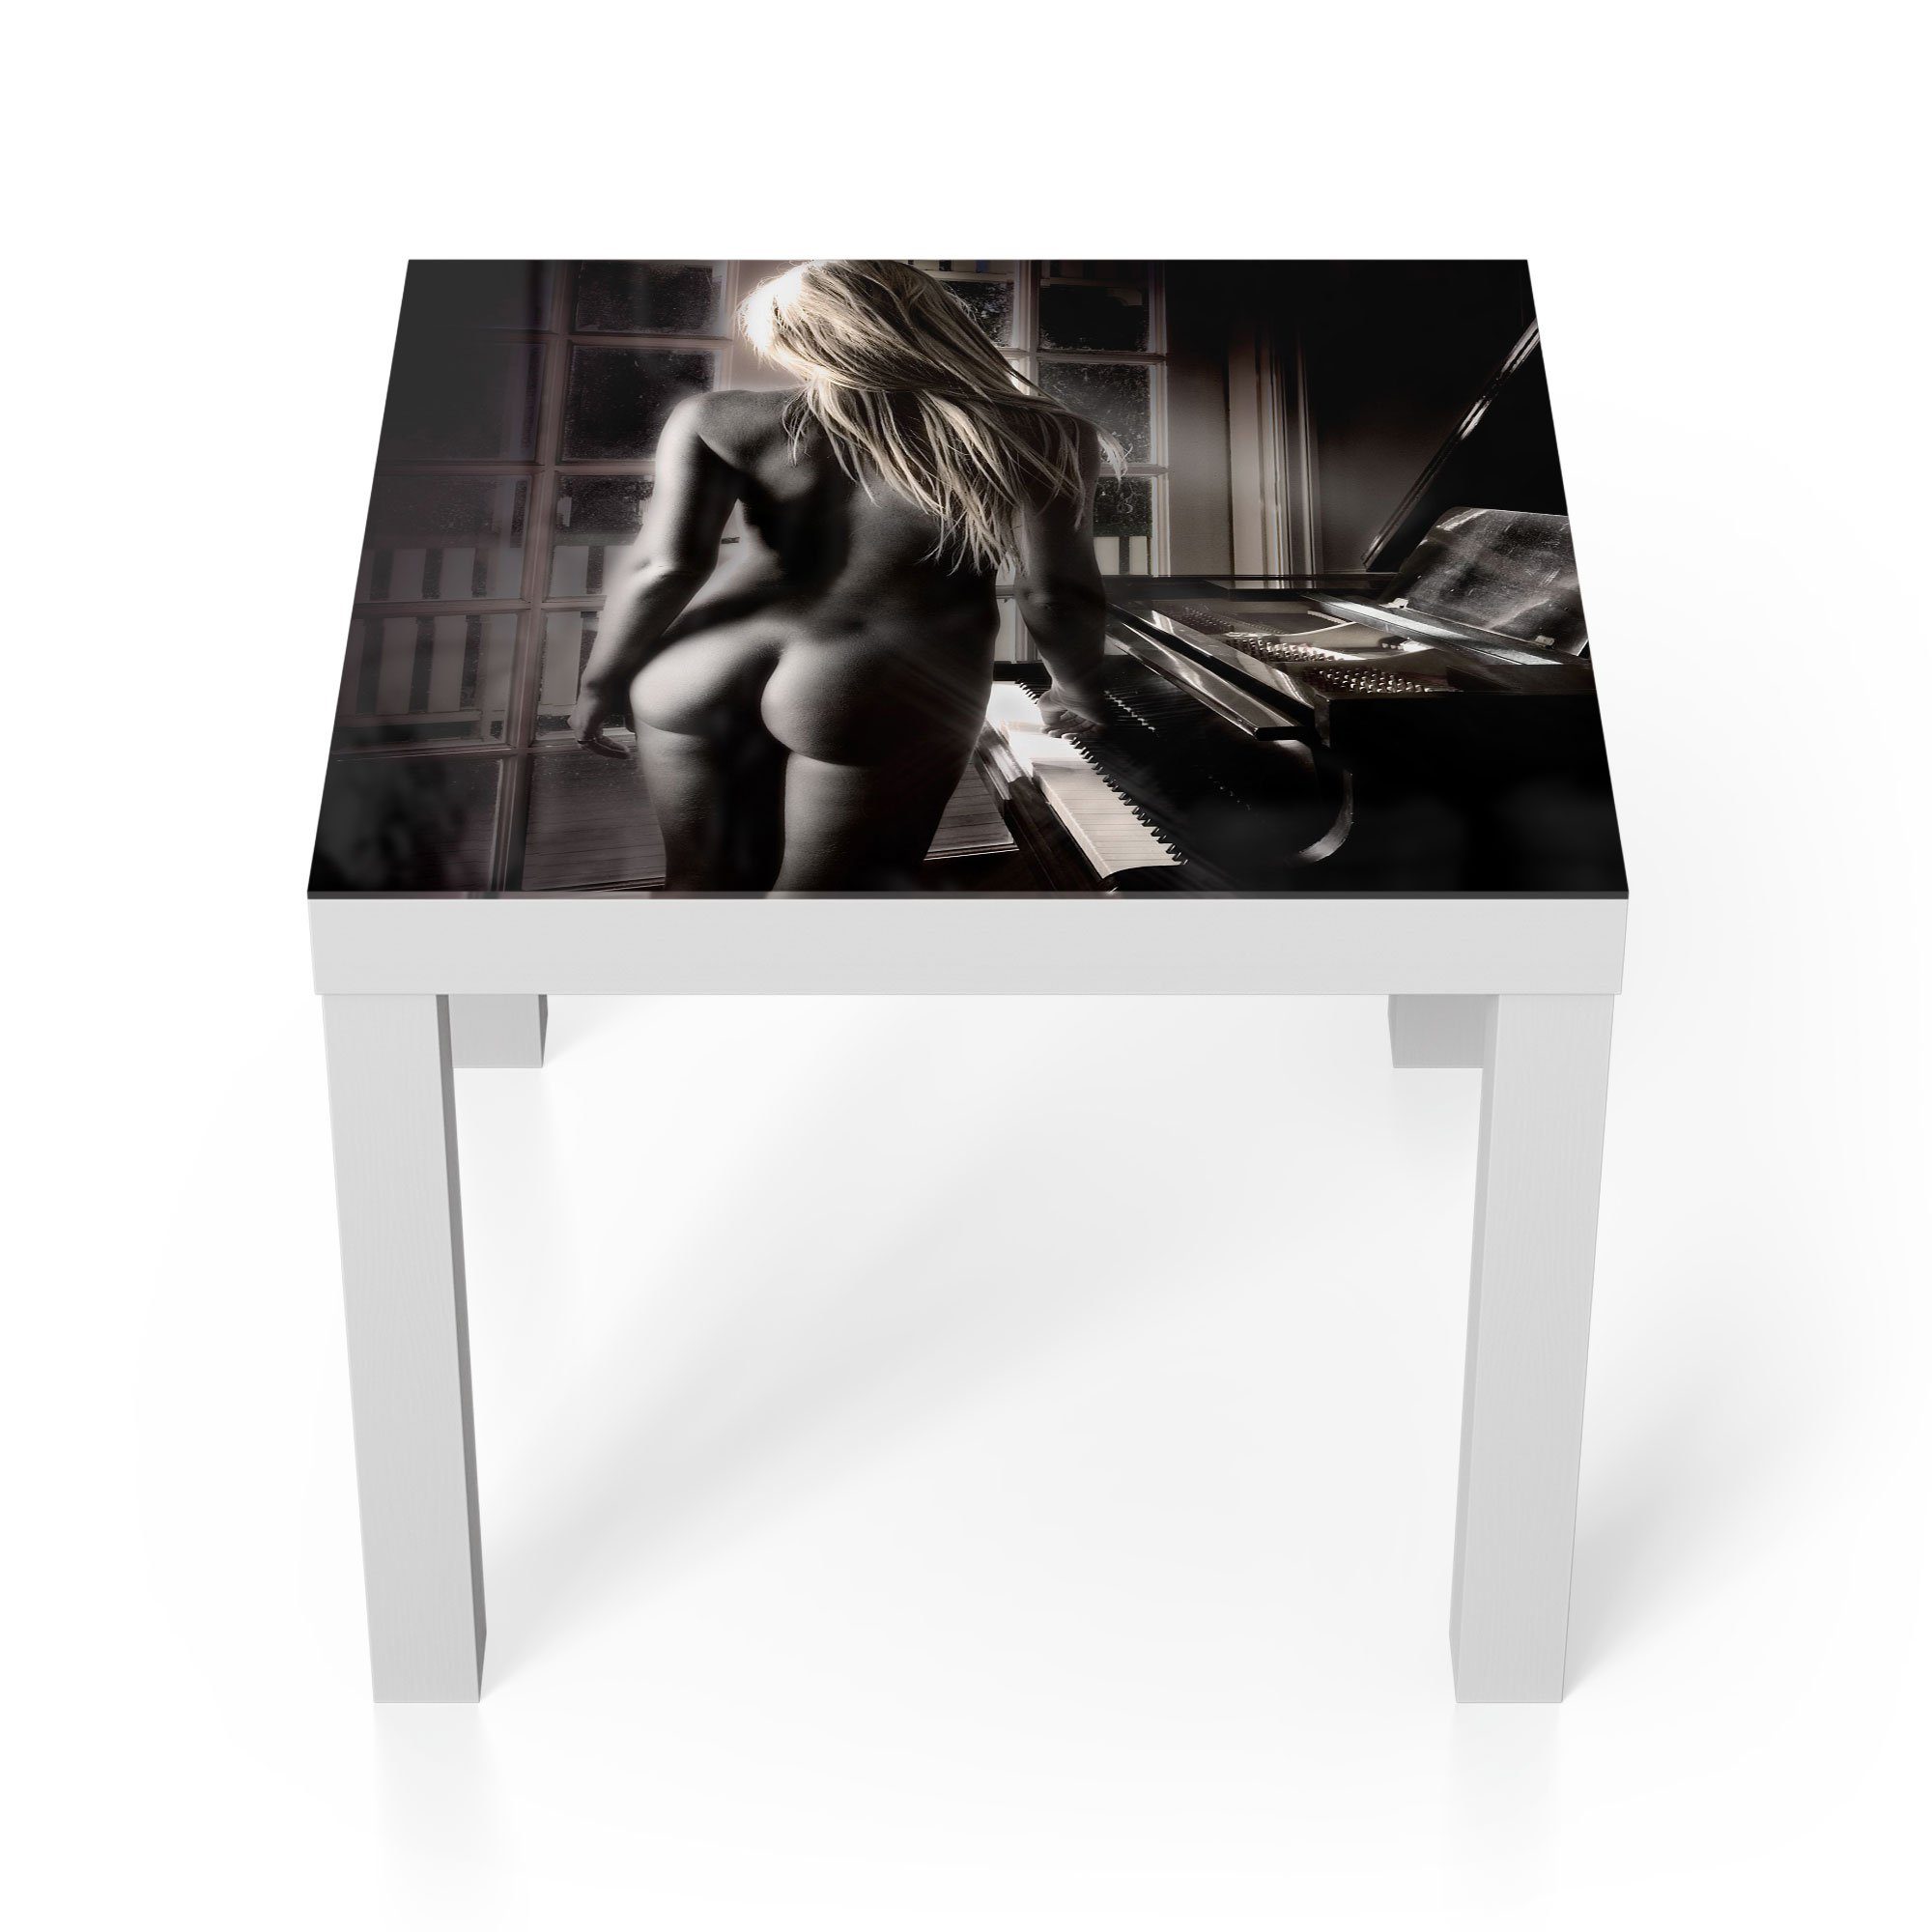 DEQORI Couchtisch 'Nackte Frau am Piano', Glas Beistelltisch Glastisch modern Weiß